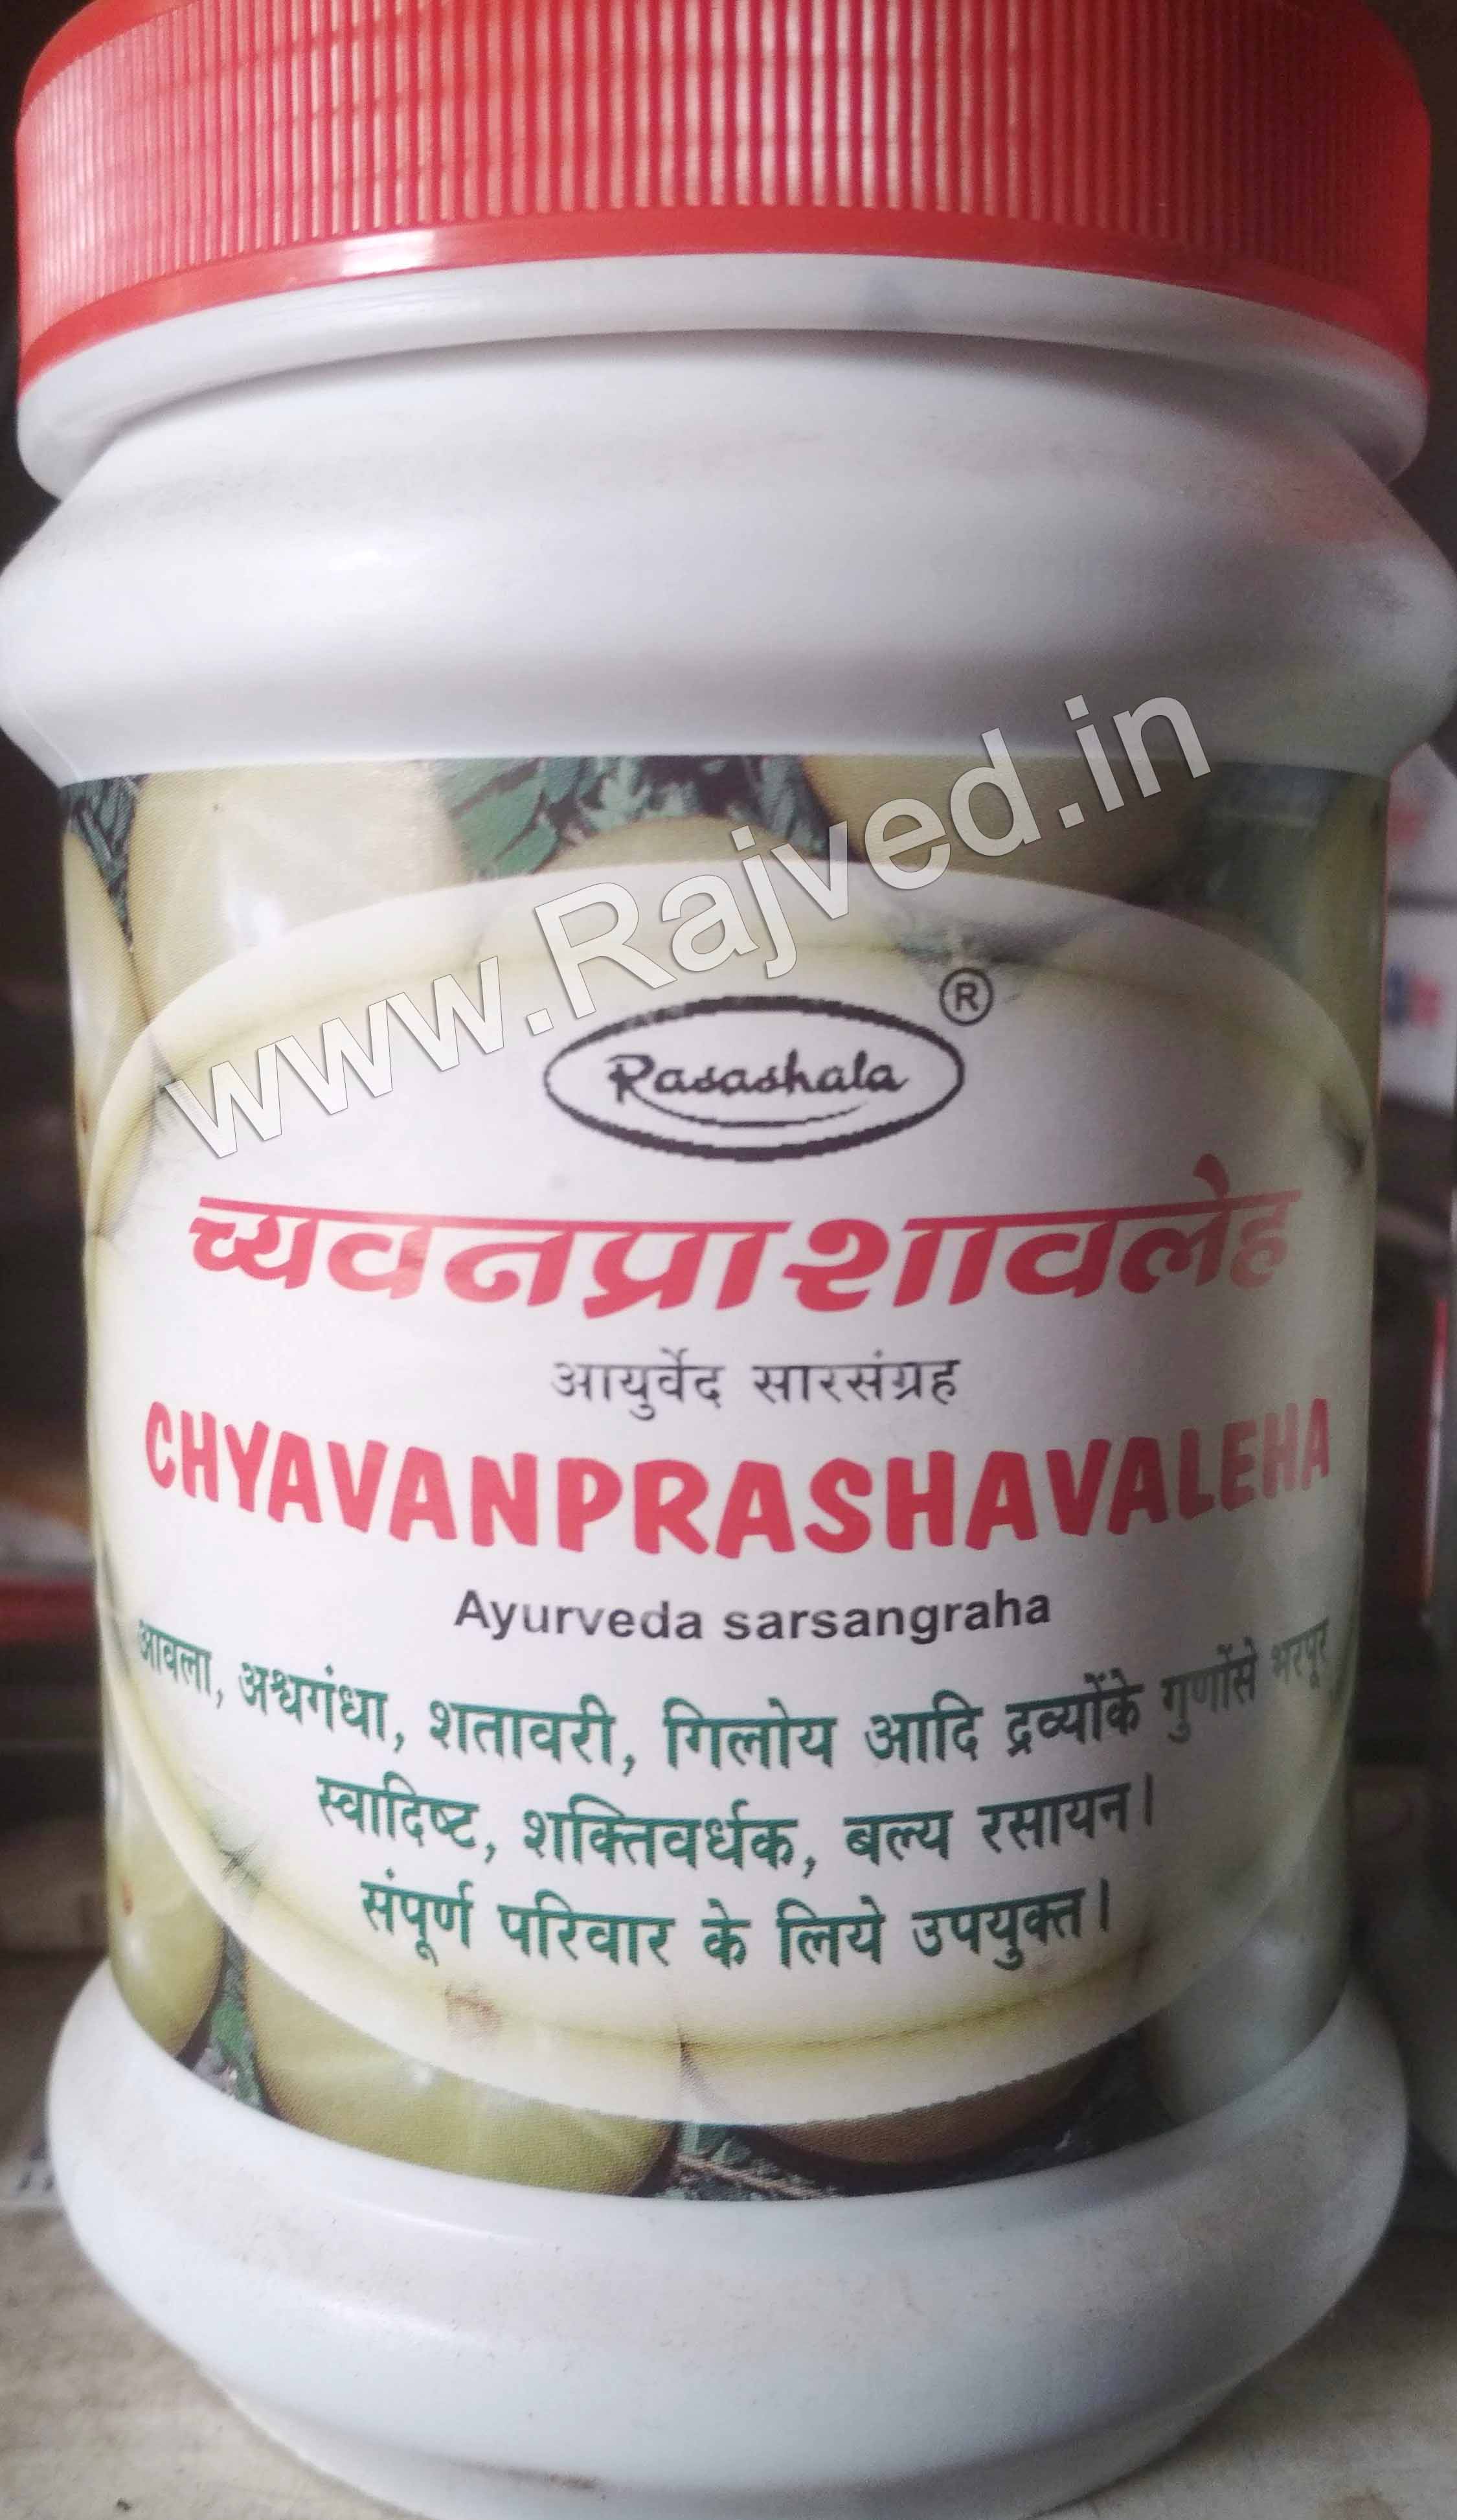 chyavanprash avaleha 1 kg upto 20% off rasashala